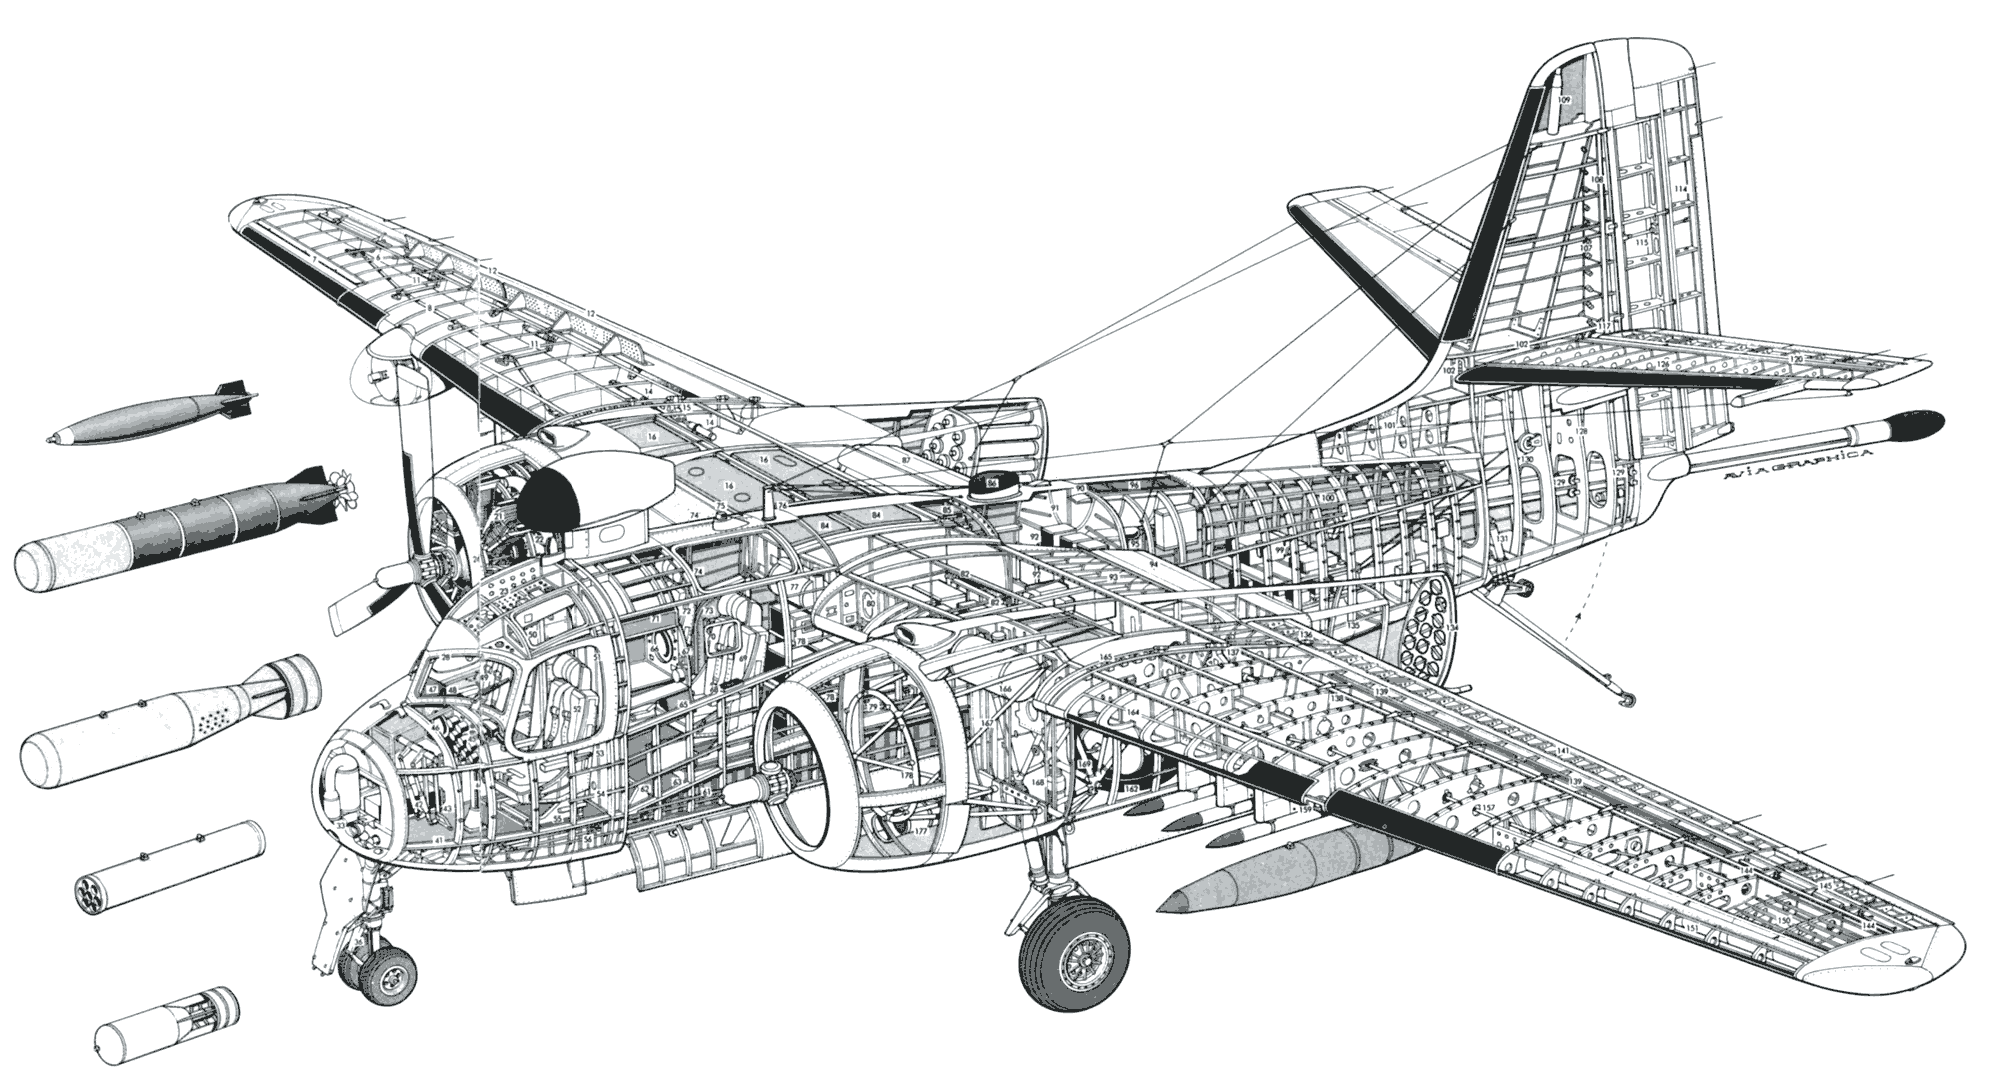 Grumman S-2 Tracker cutaway